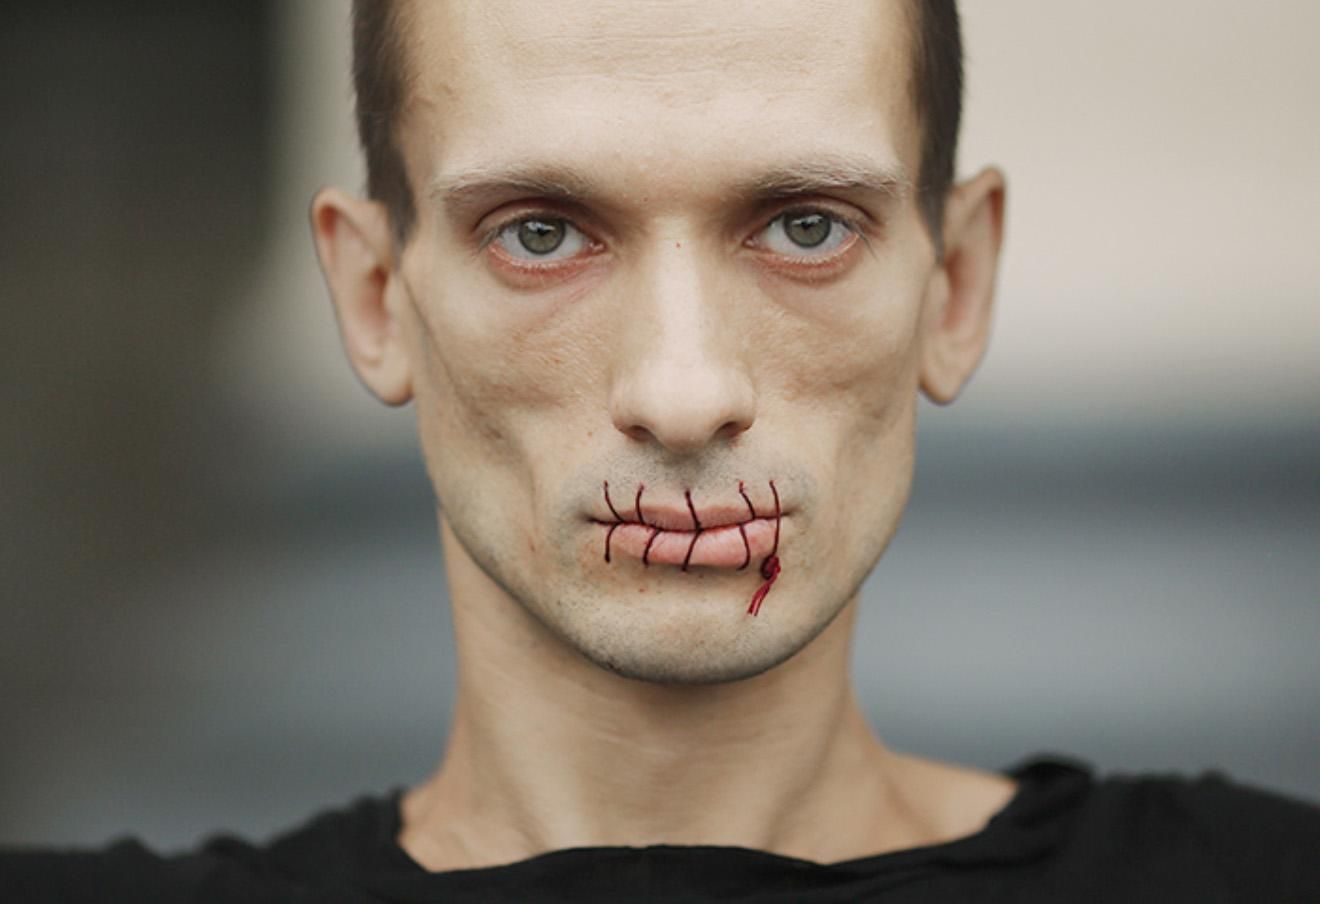 Савченко — це єдина людина, яка хоче змінити Україну, — художник Павленський